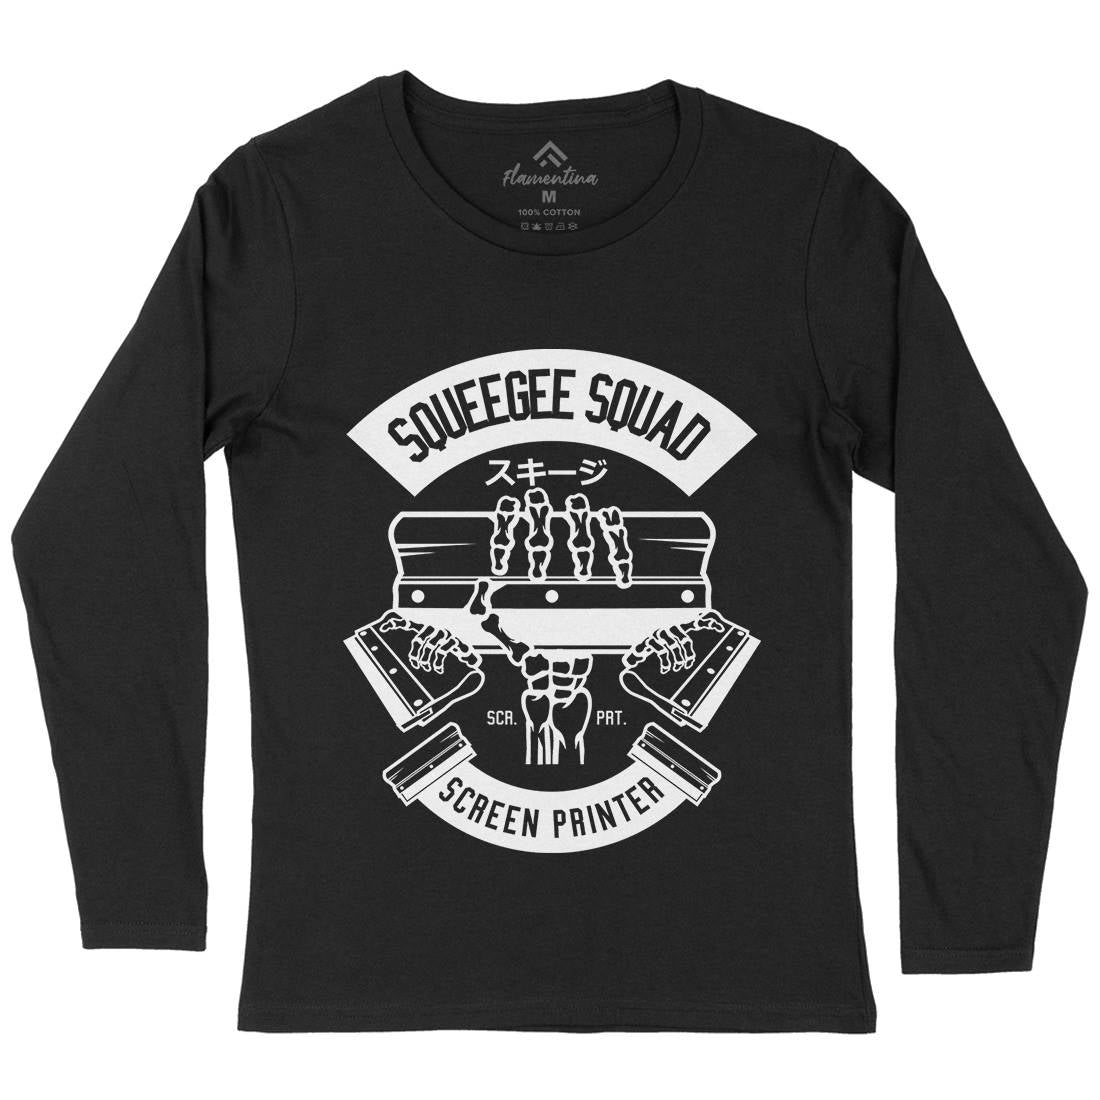 Squeegee Squad Womens Long Sleeve T-Shirt Retro B642